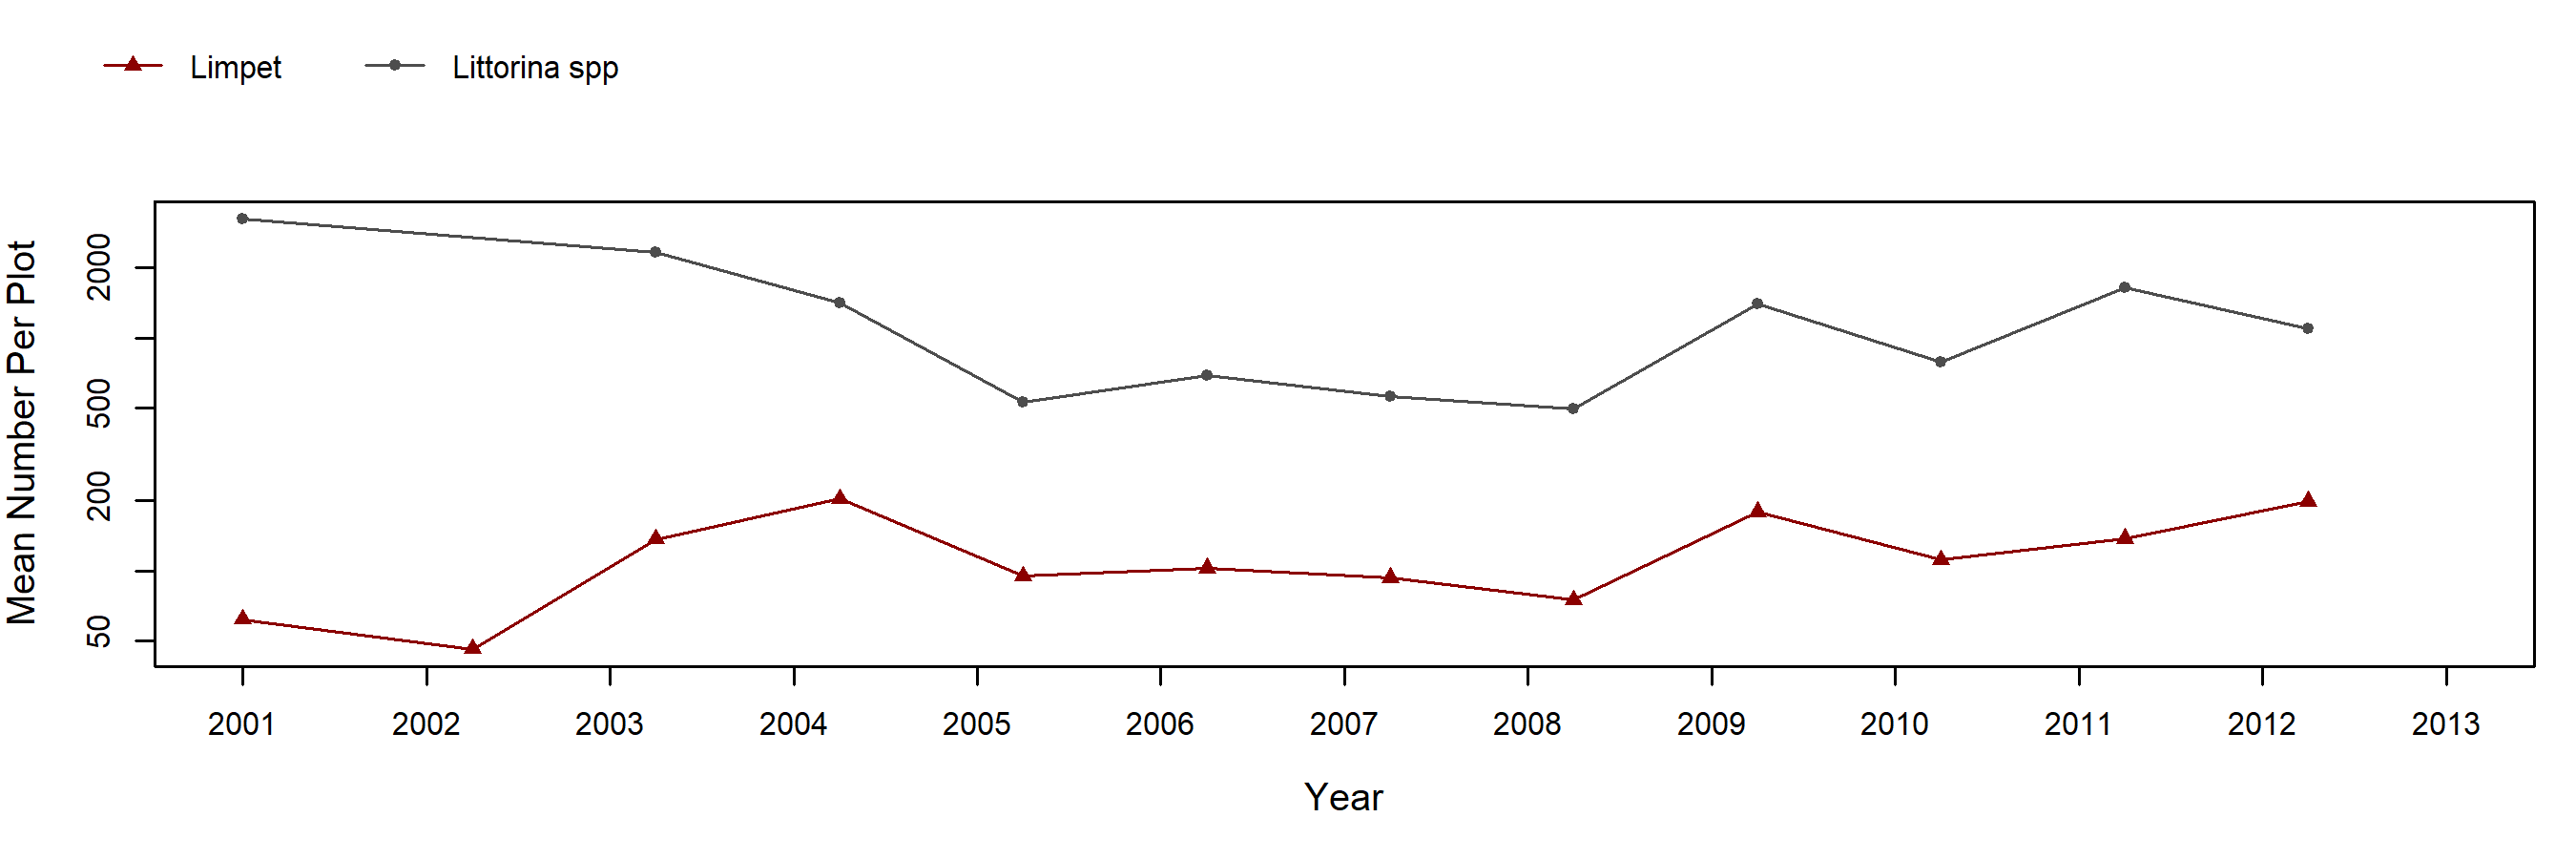 Bodega barnacle trend plot